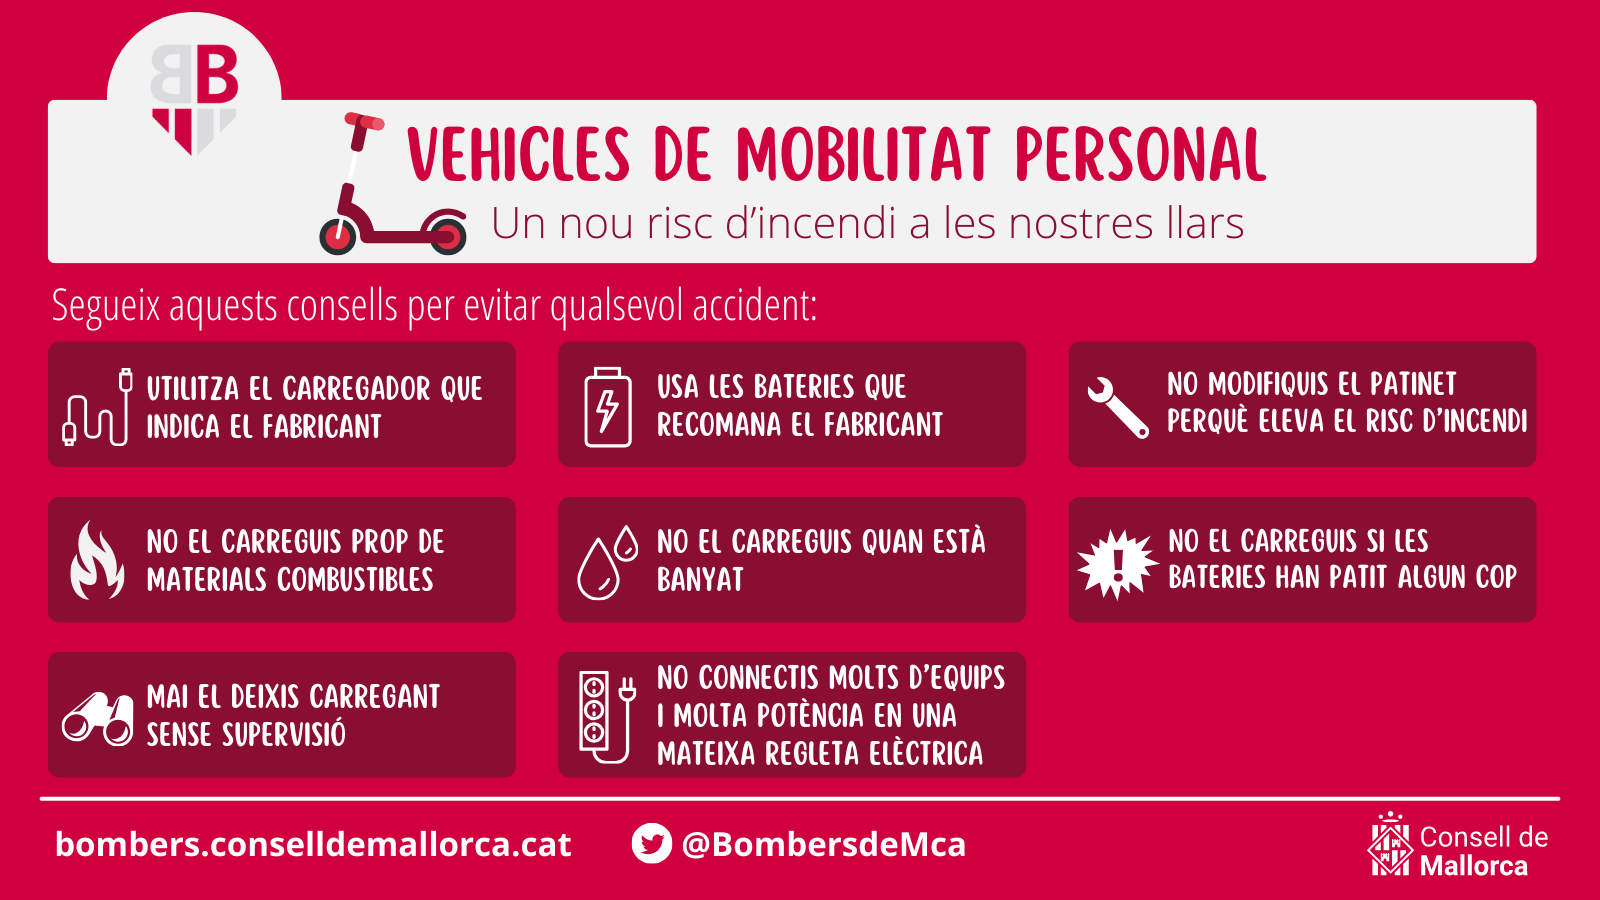 Campaña de los Bombers de Mallorca por el riesgo de incendio de los vehículos de movilidad personal.